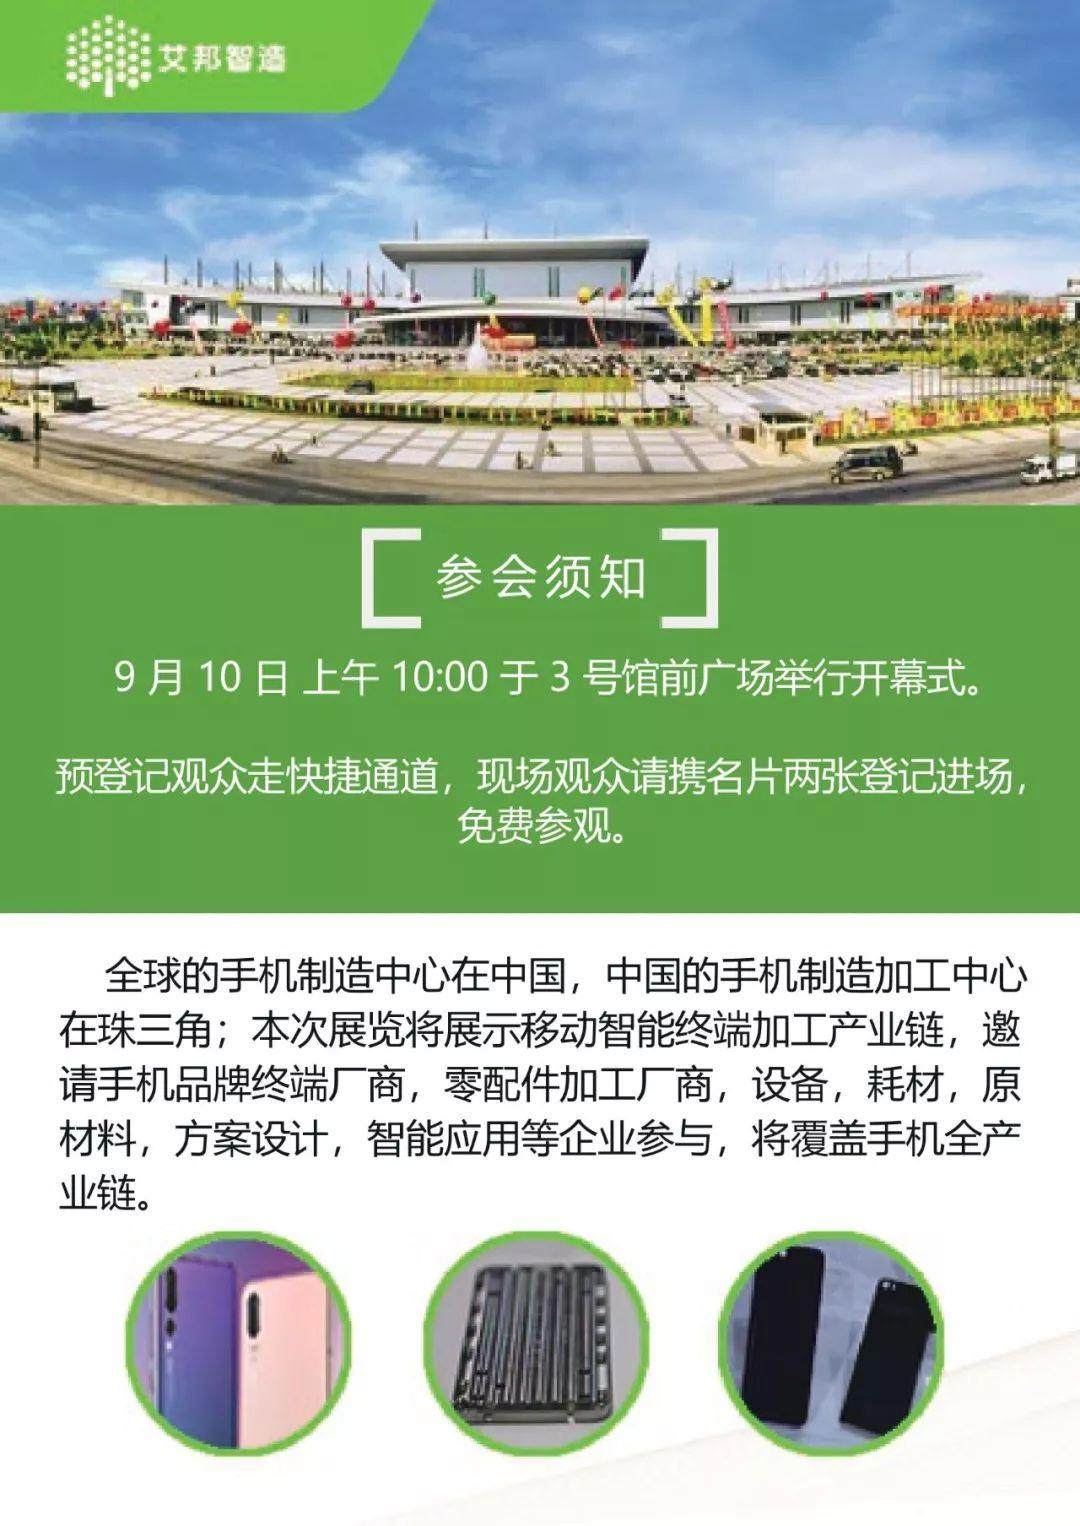 首届手机无线充电产业链展览将于2018年9月10-12日在东莞举行